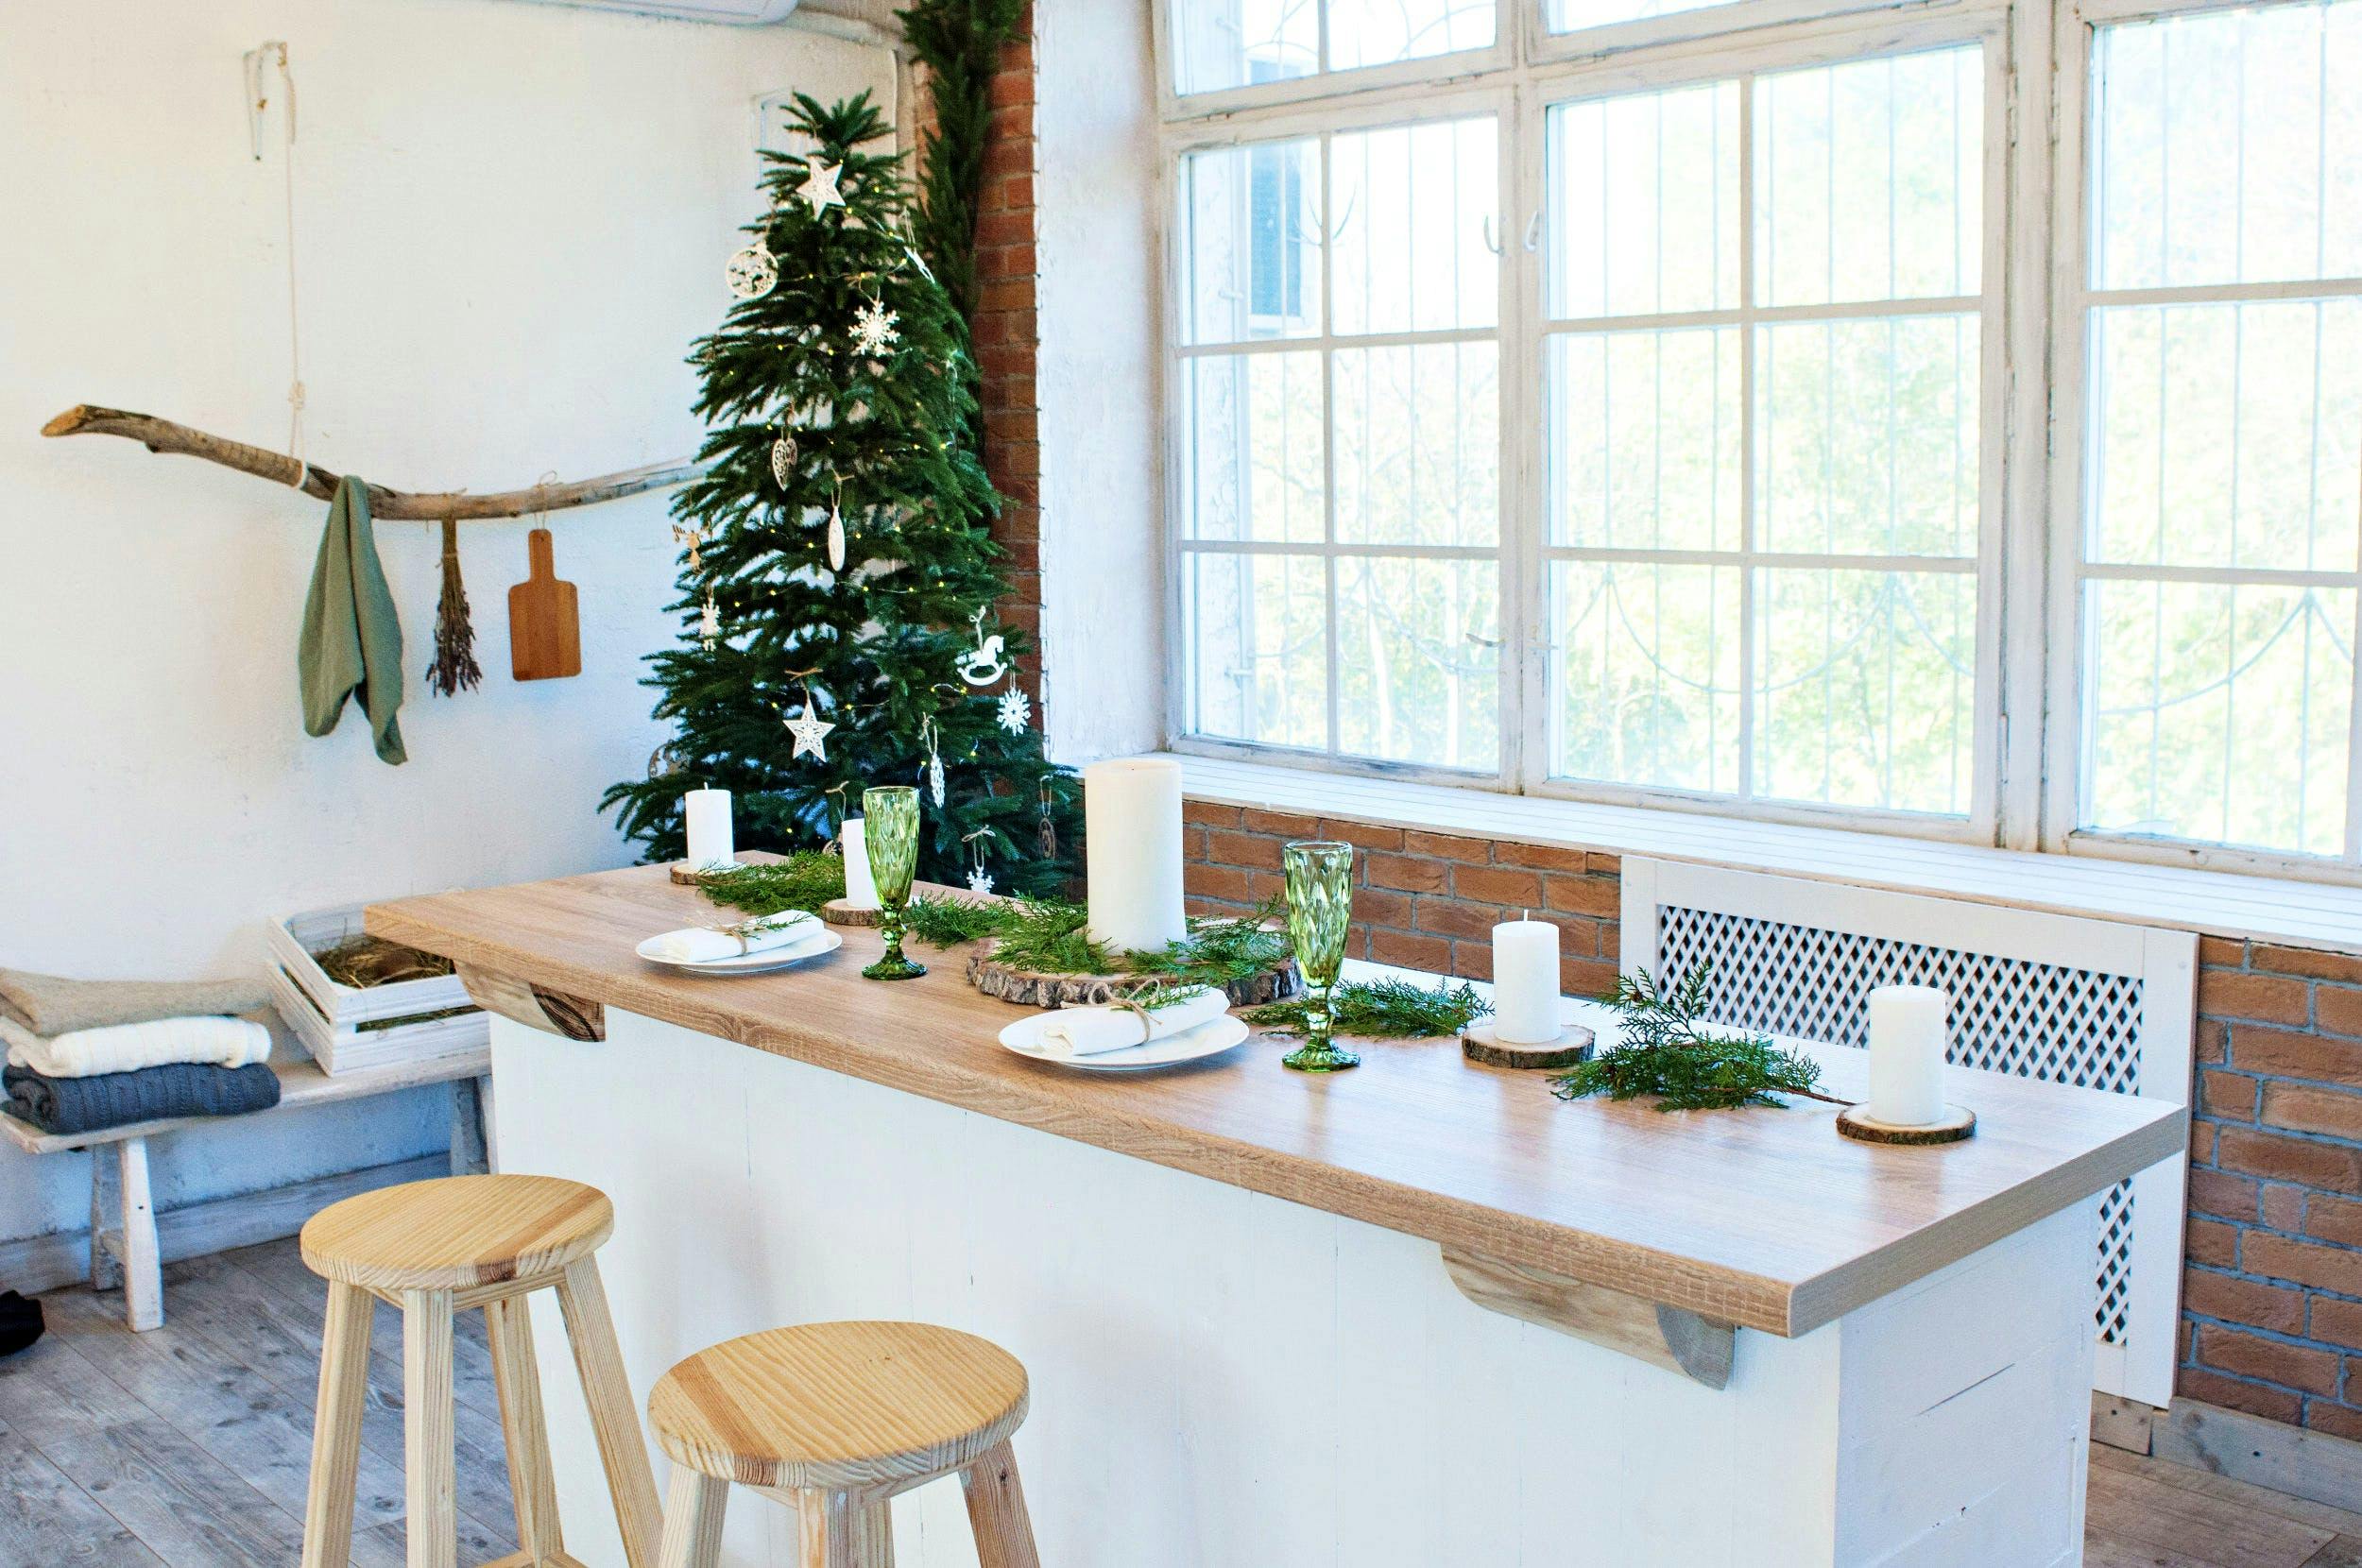 Numero immagine 32 della sezione corrente di {{The most creative Christmas decoration ideas for your kitchen}} di Cosentino Italia